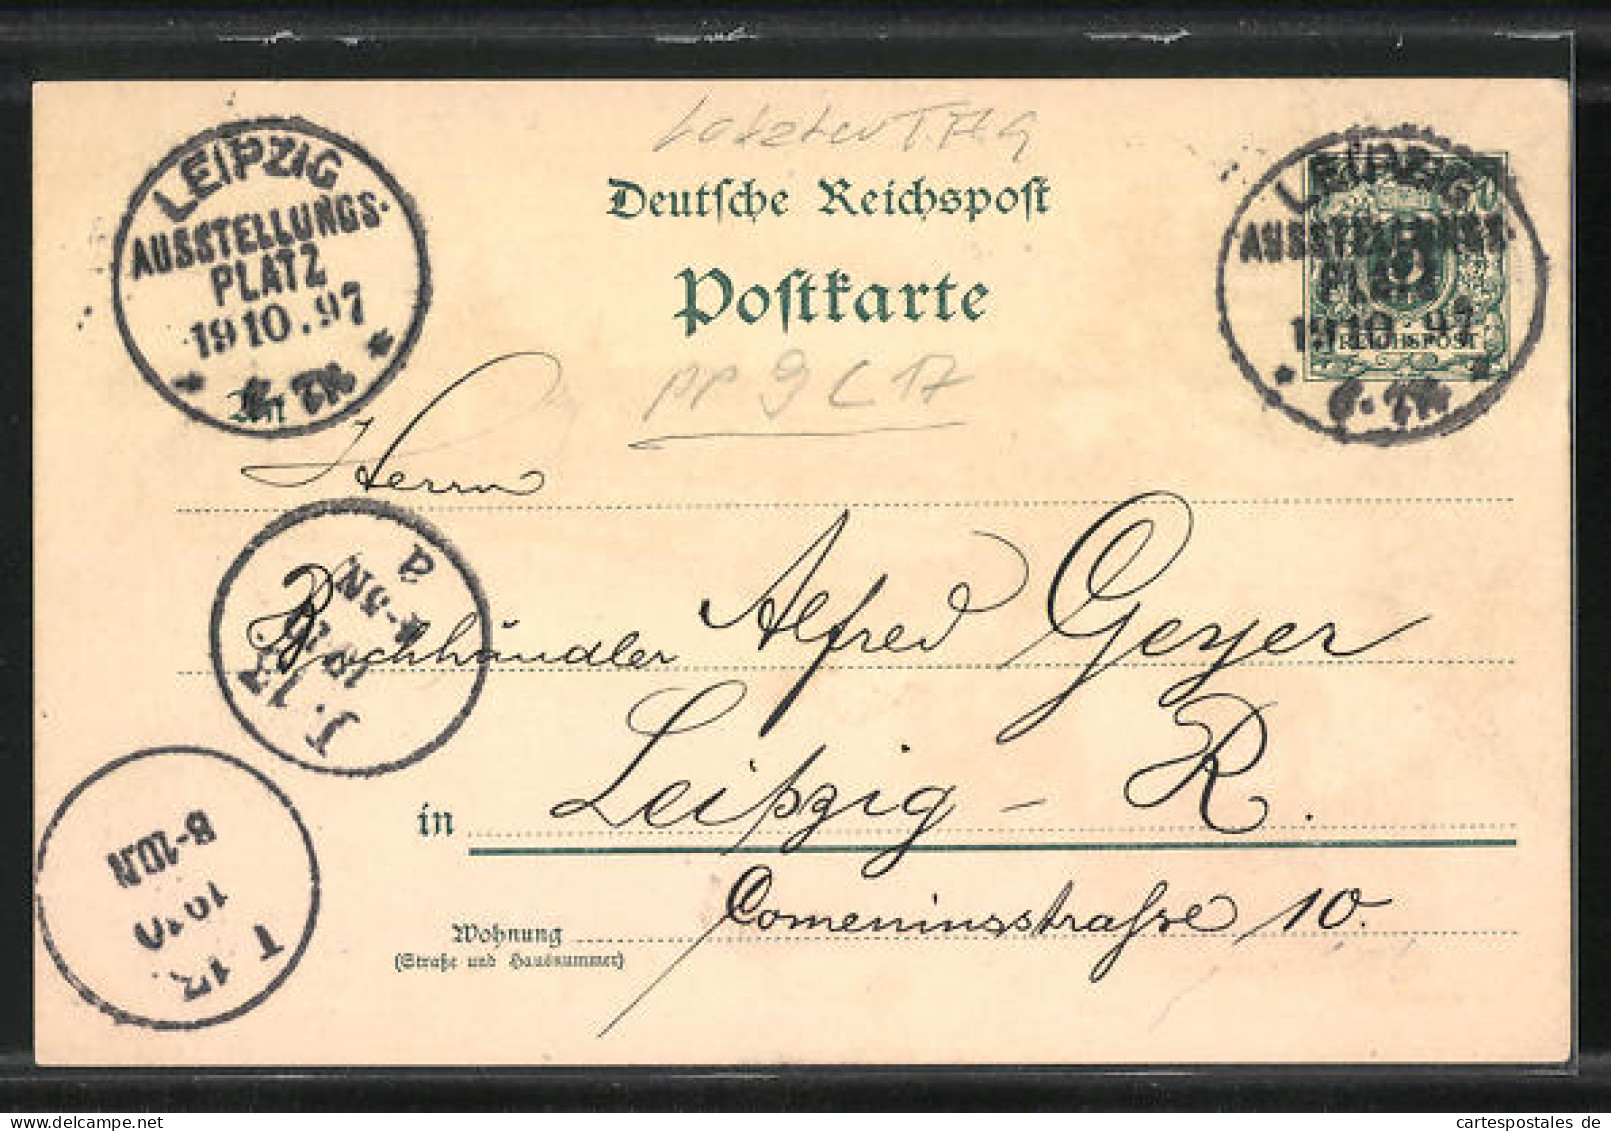 Lithographie Leipzig, Sächs.-Thür. Industrie U. Gewerbe-Ausstellung 1897, Reiterstandbild König Albert V. Sachsen  - Esposizioni